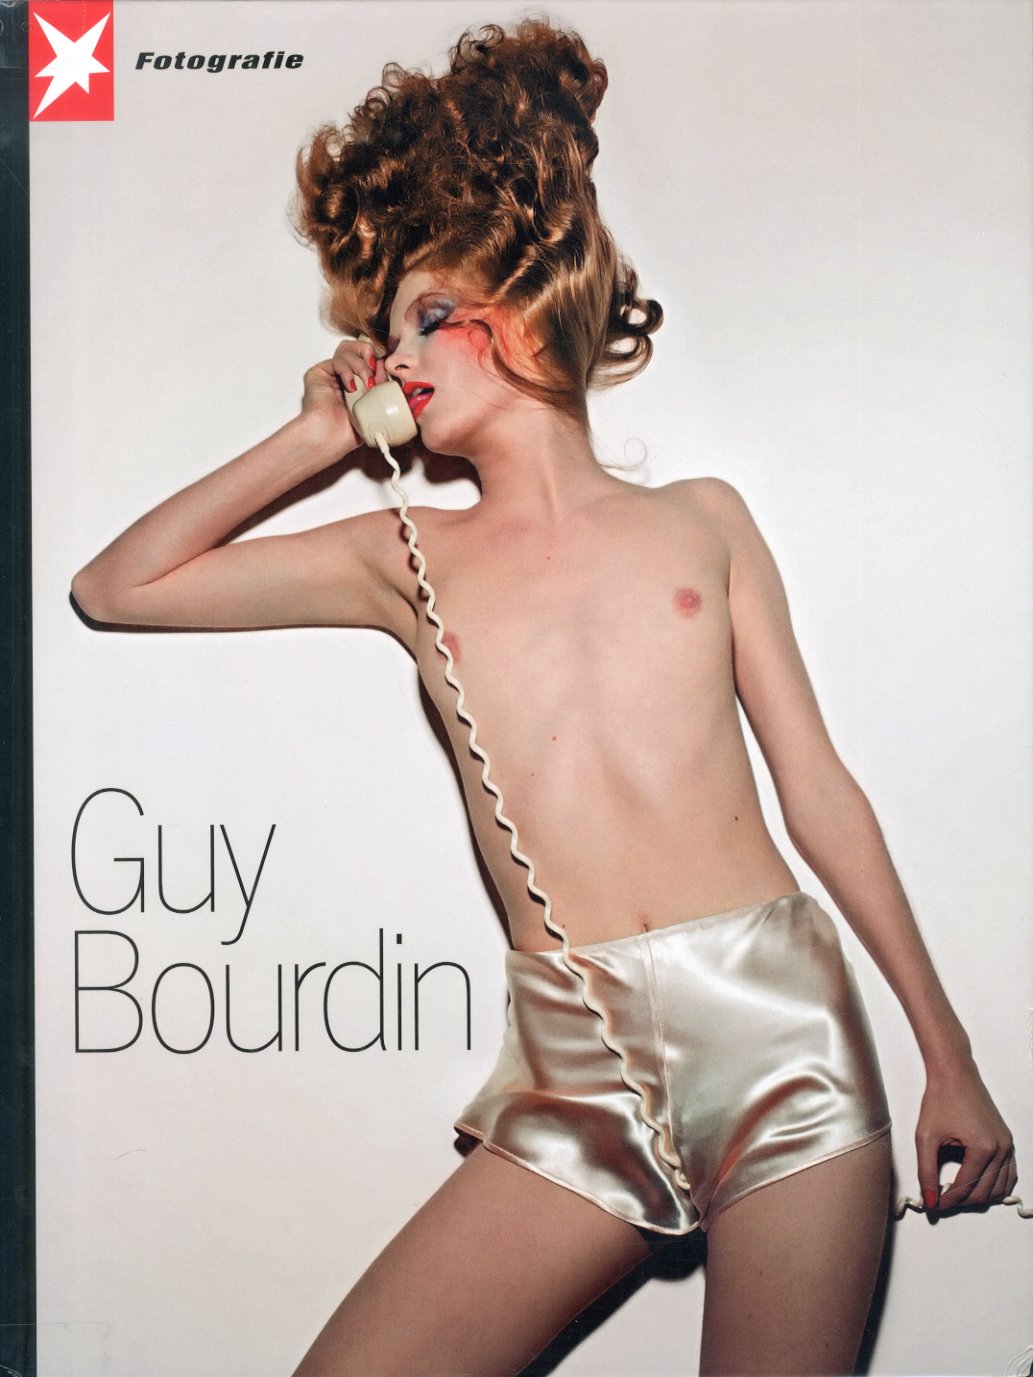 「Portfolio Nr.61  Guy Bourdin / Guy Bourdin」メイン画像